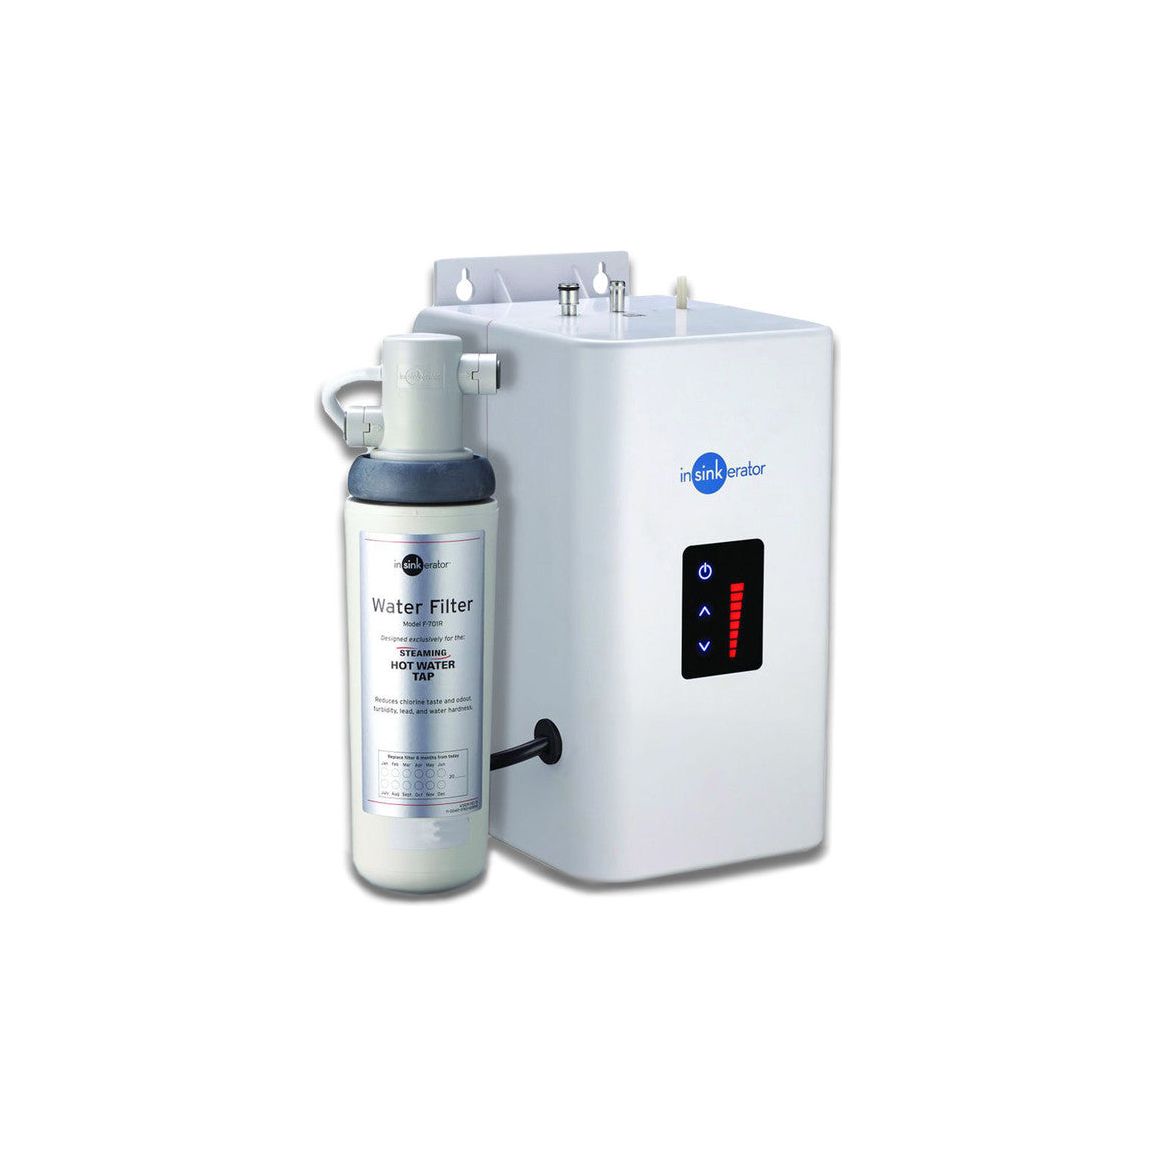 Grifo mezclador de agua caliente InSinkErator H3300, tanque Neo y filtro de agua - Acero cepillado